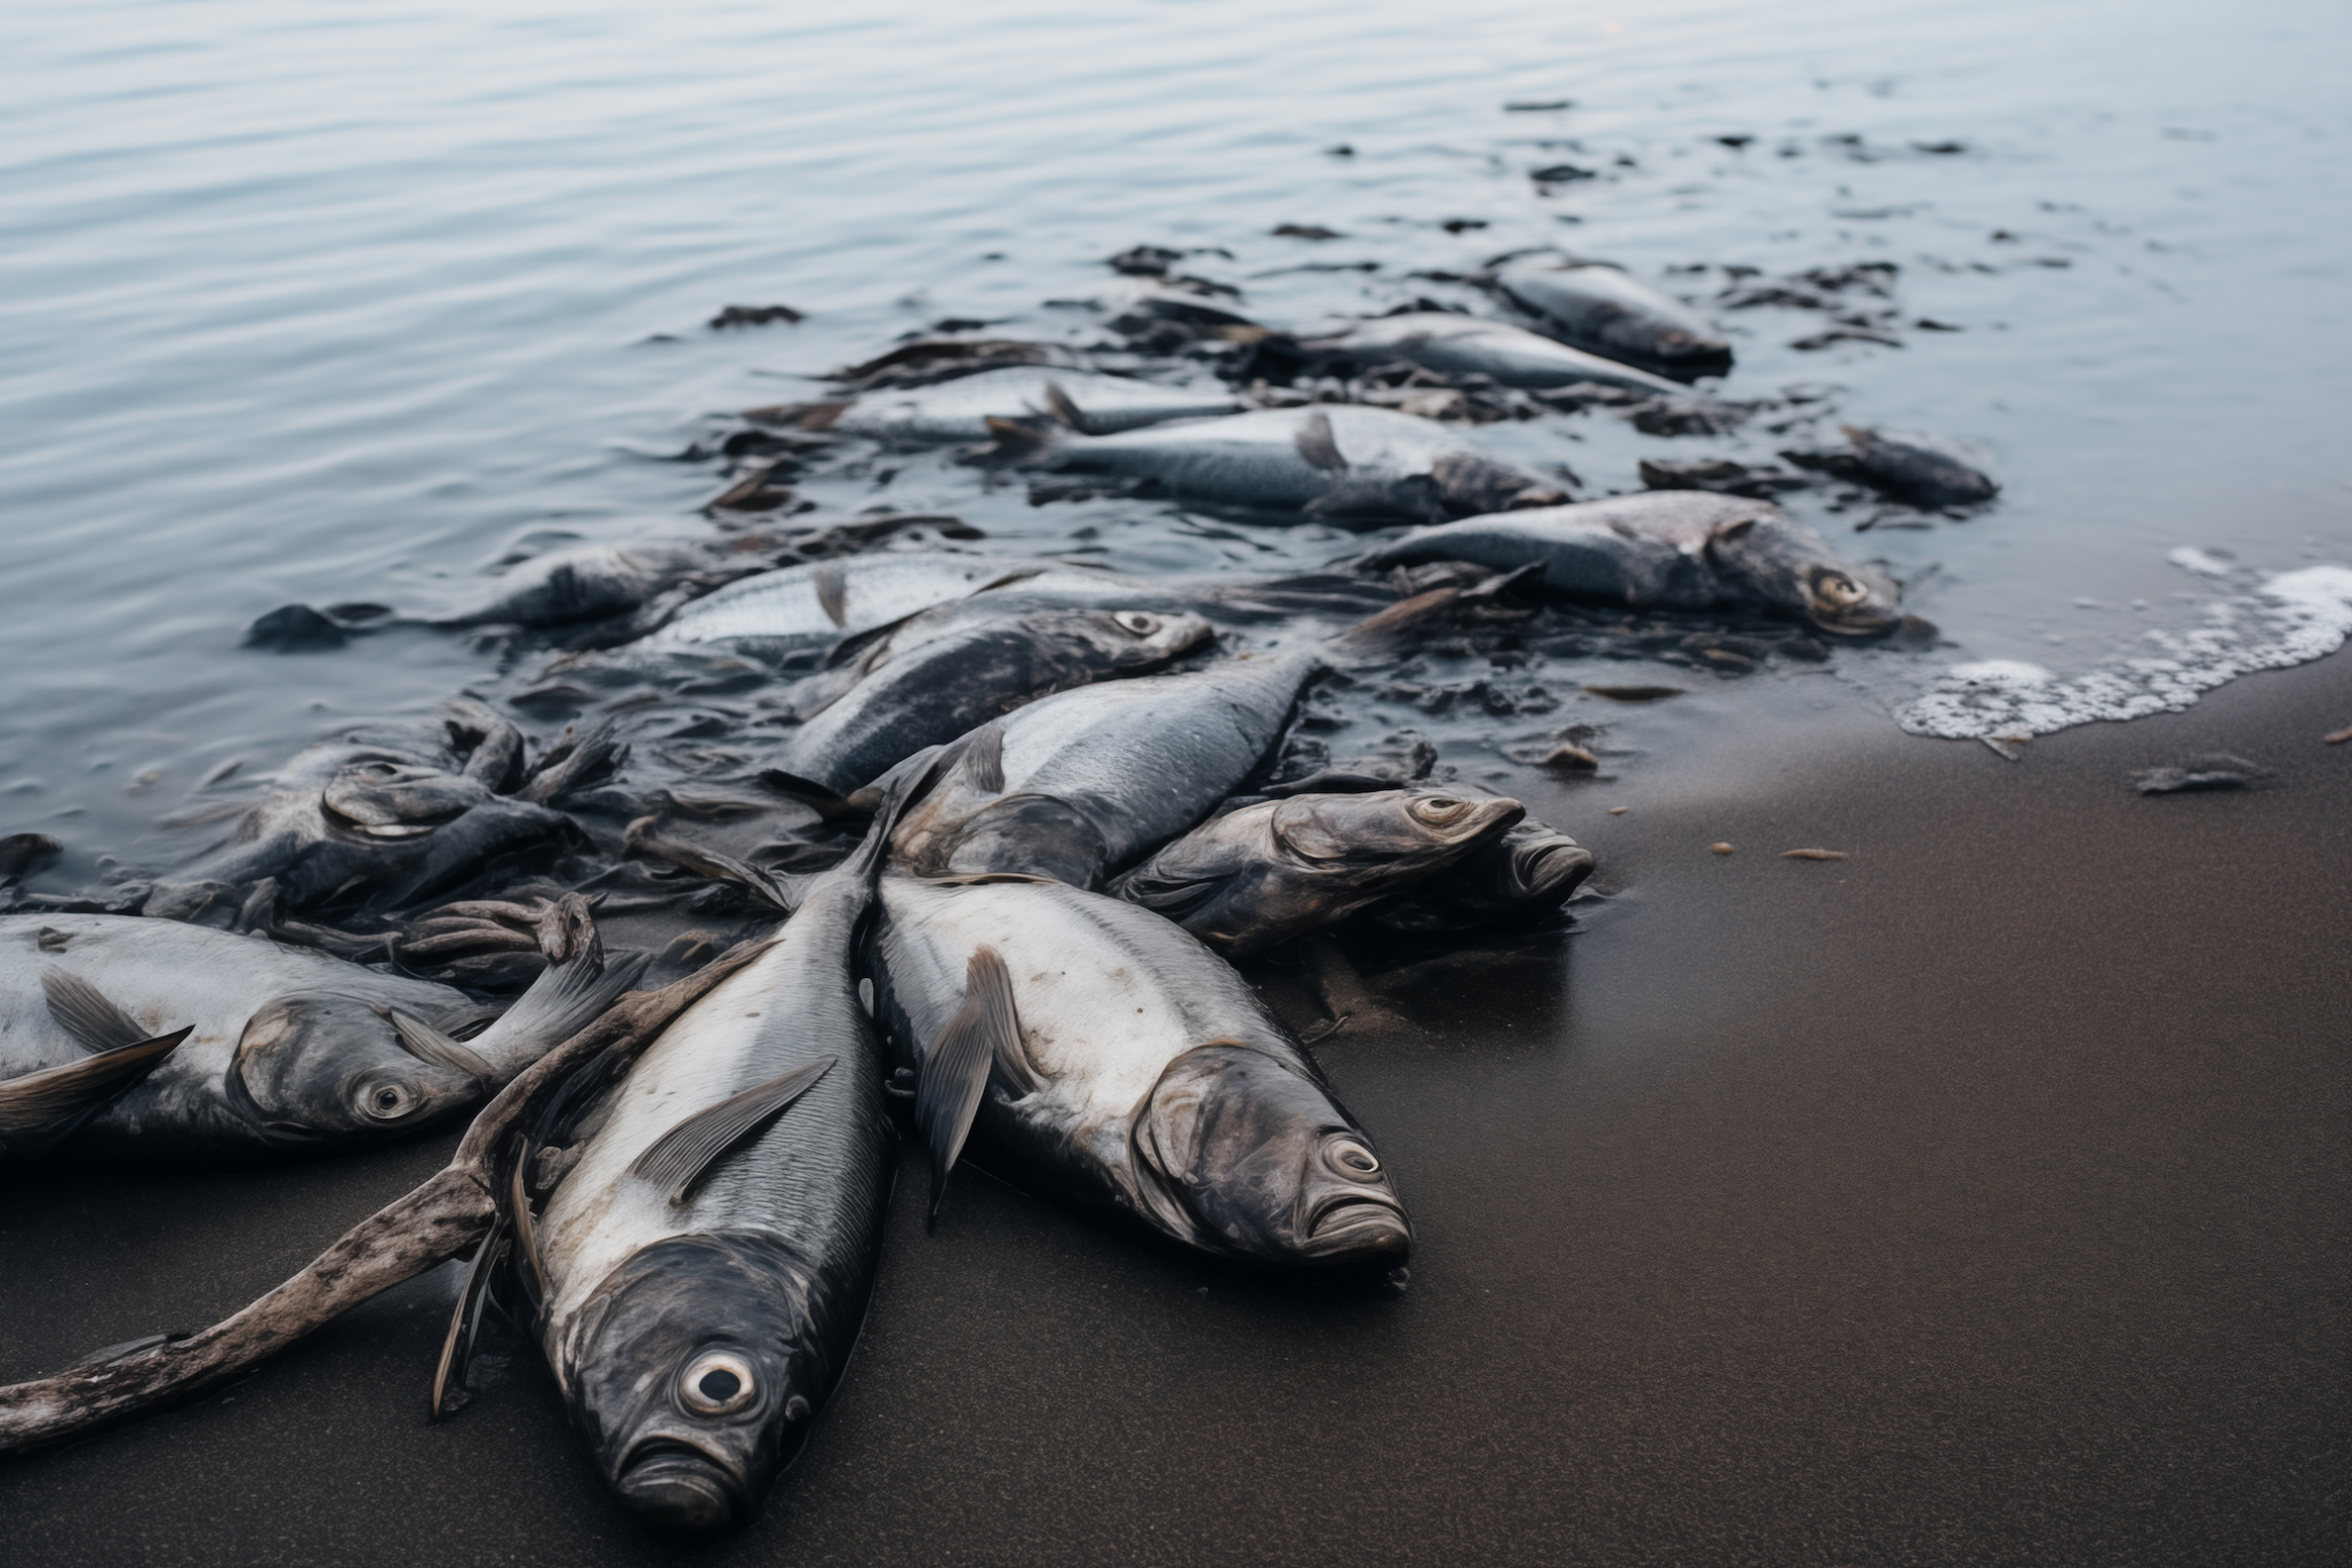 Le nombre de zones mortes, sans vie, explose dans les océans. © callisto, Adobe Stock